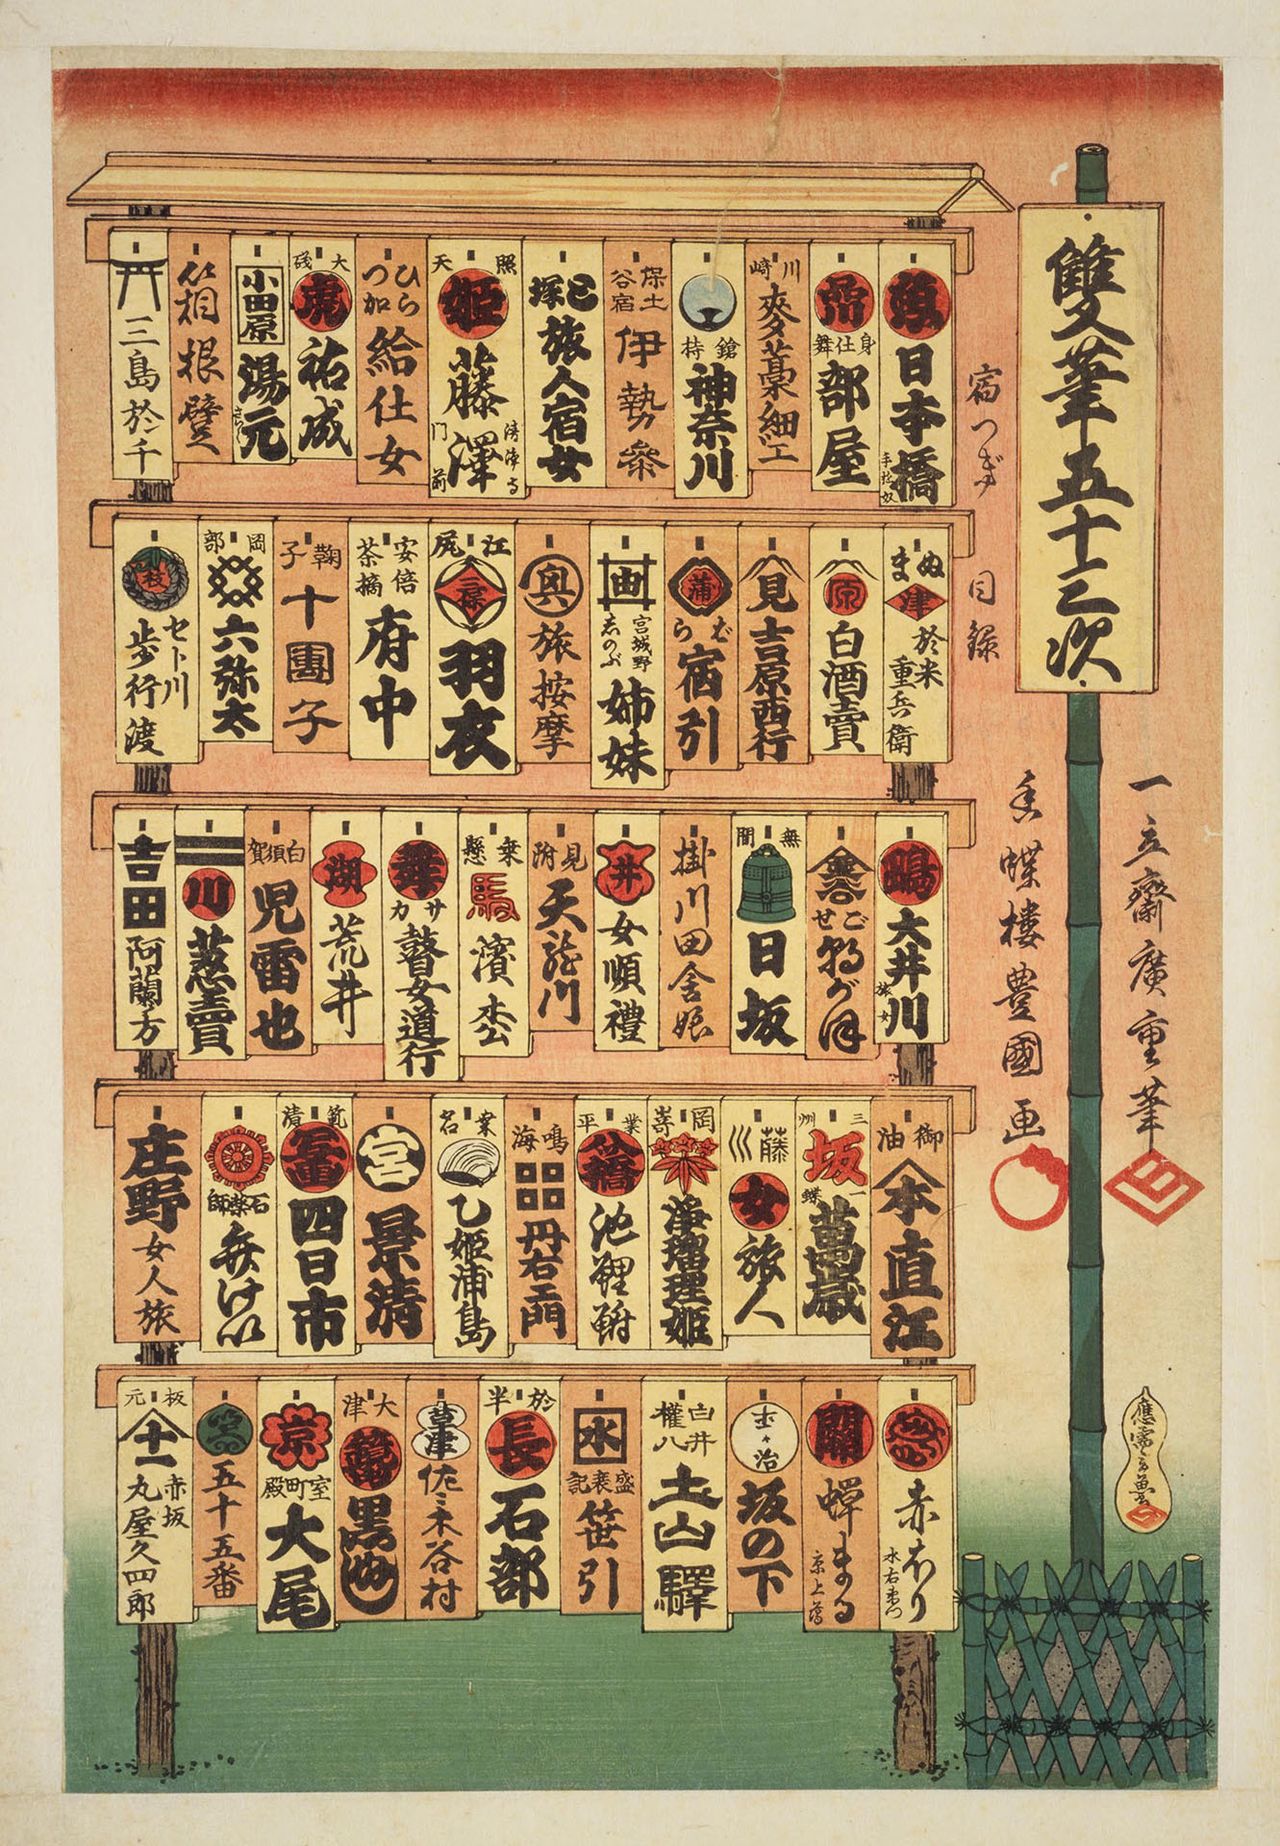 『双筆五十三次 目録』（1854年　国会図書館蔵）は、宿場名の木札を並べたようなデザイン。広重、三代豊国の名の下に、玄魚の名前も記される